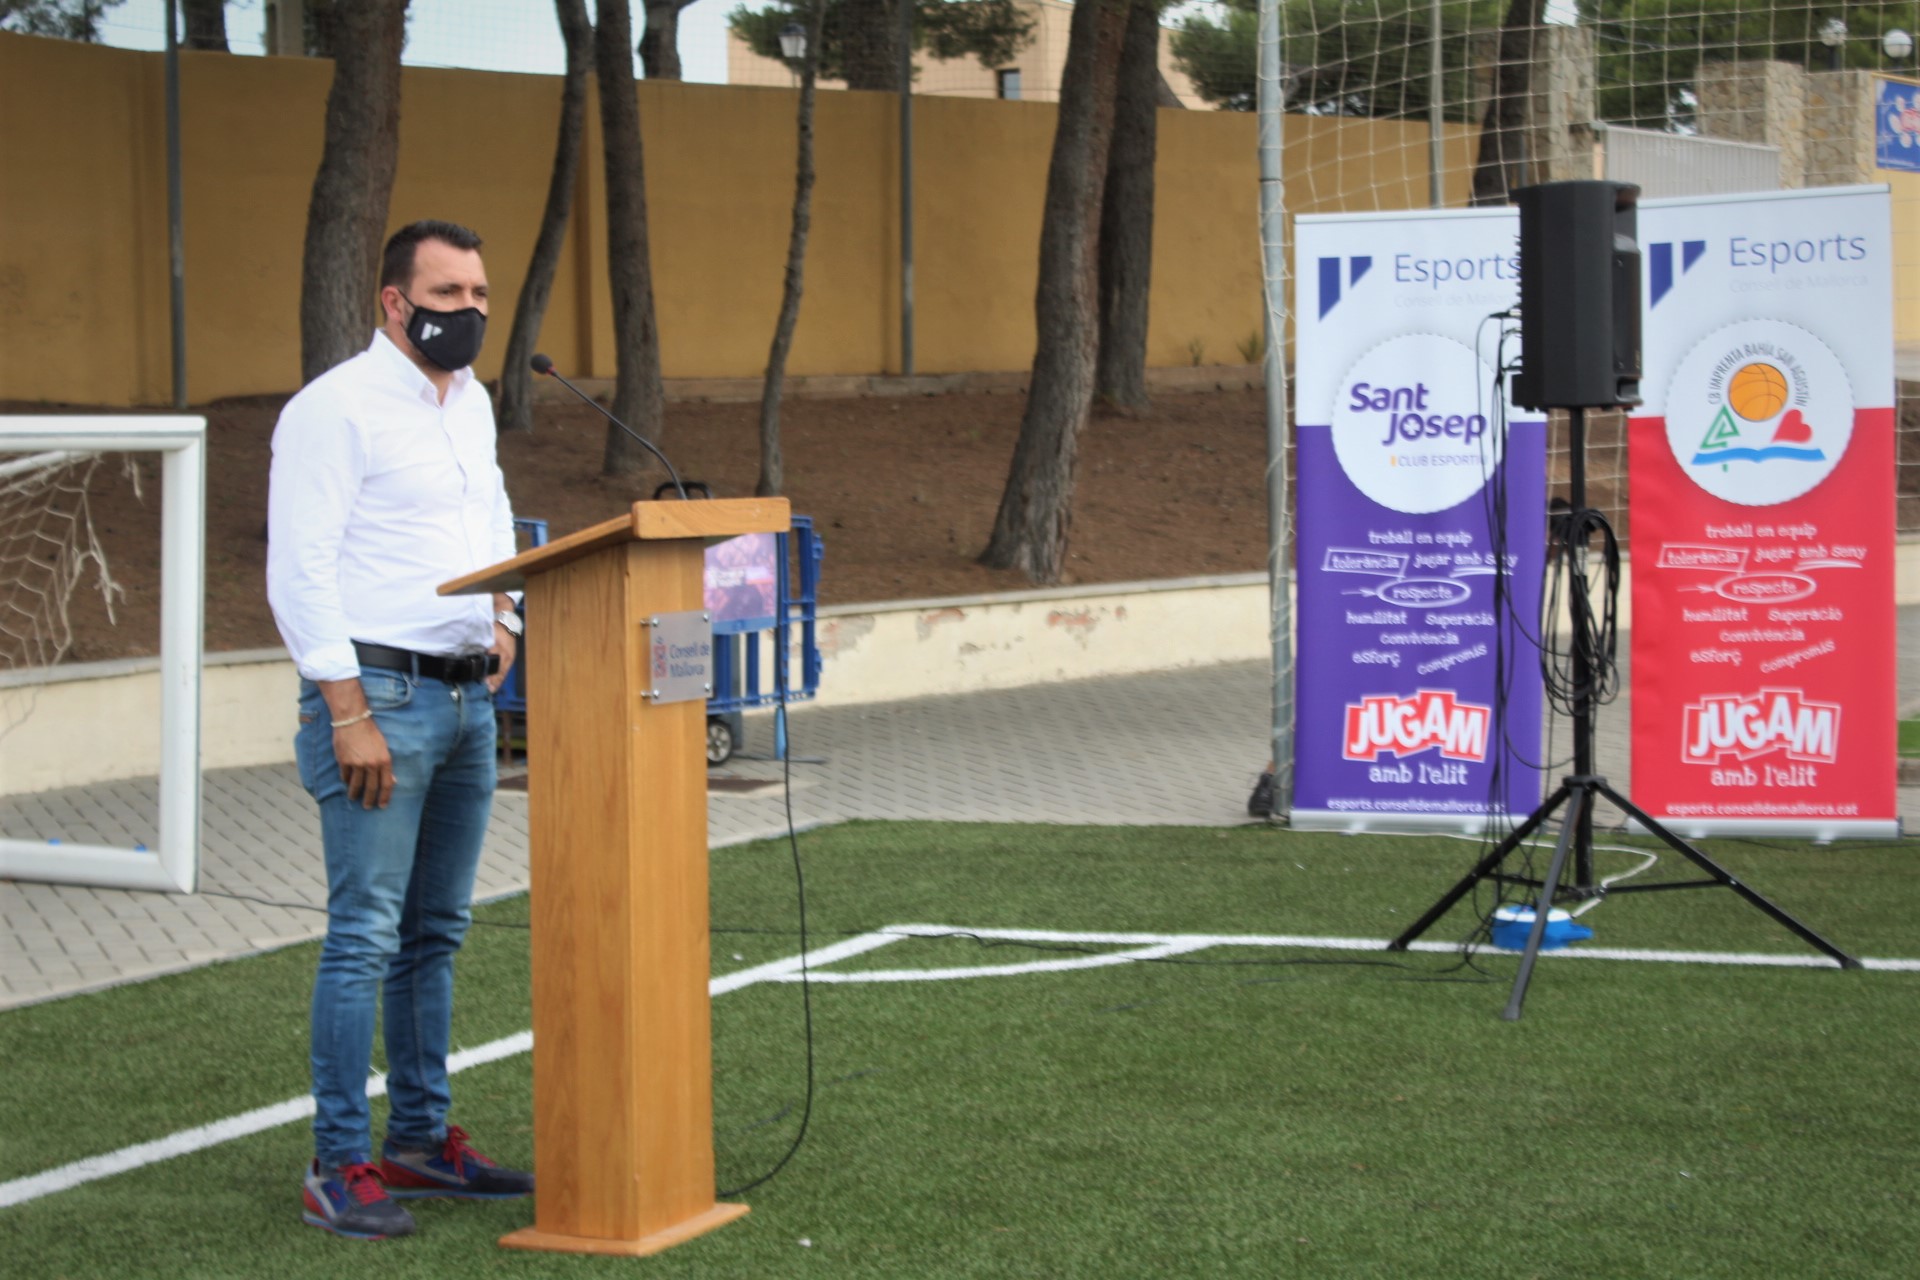 El director de Discaesports, Mariano Fernández, durant la presentació dels resultats del programa «Jugam amb l’elit».